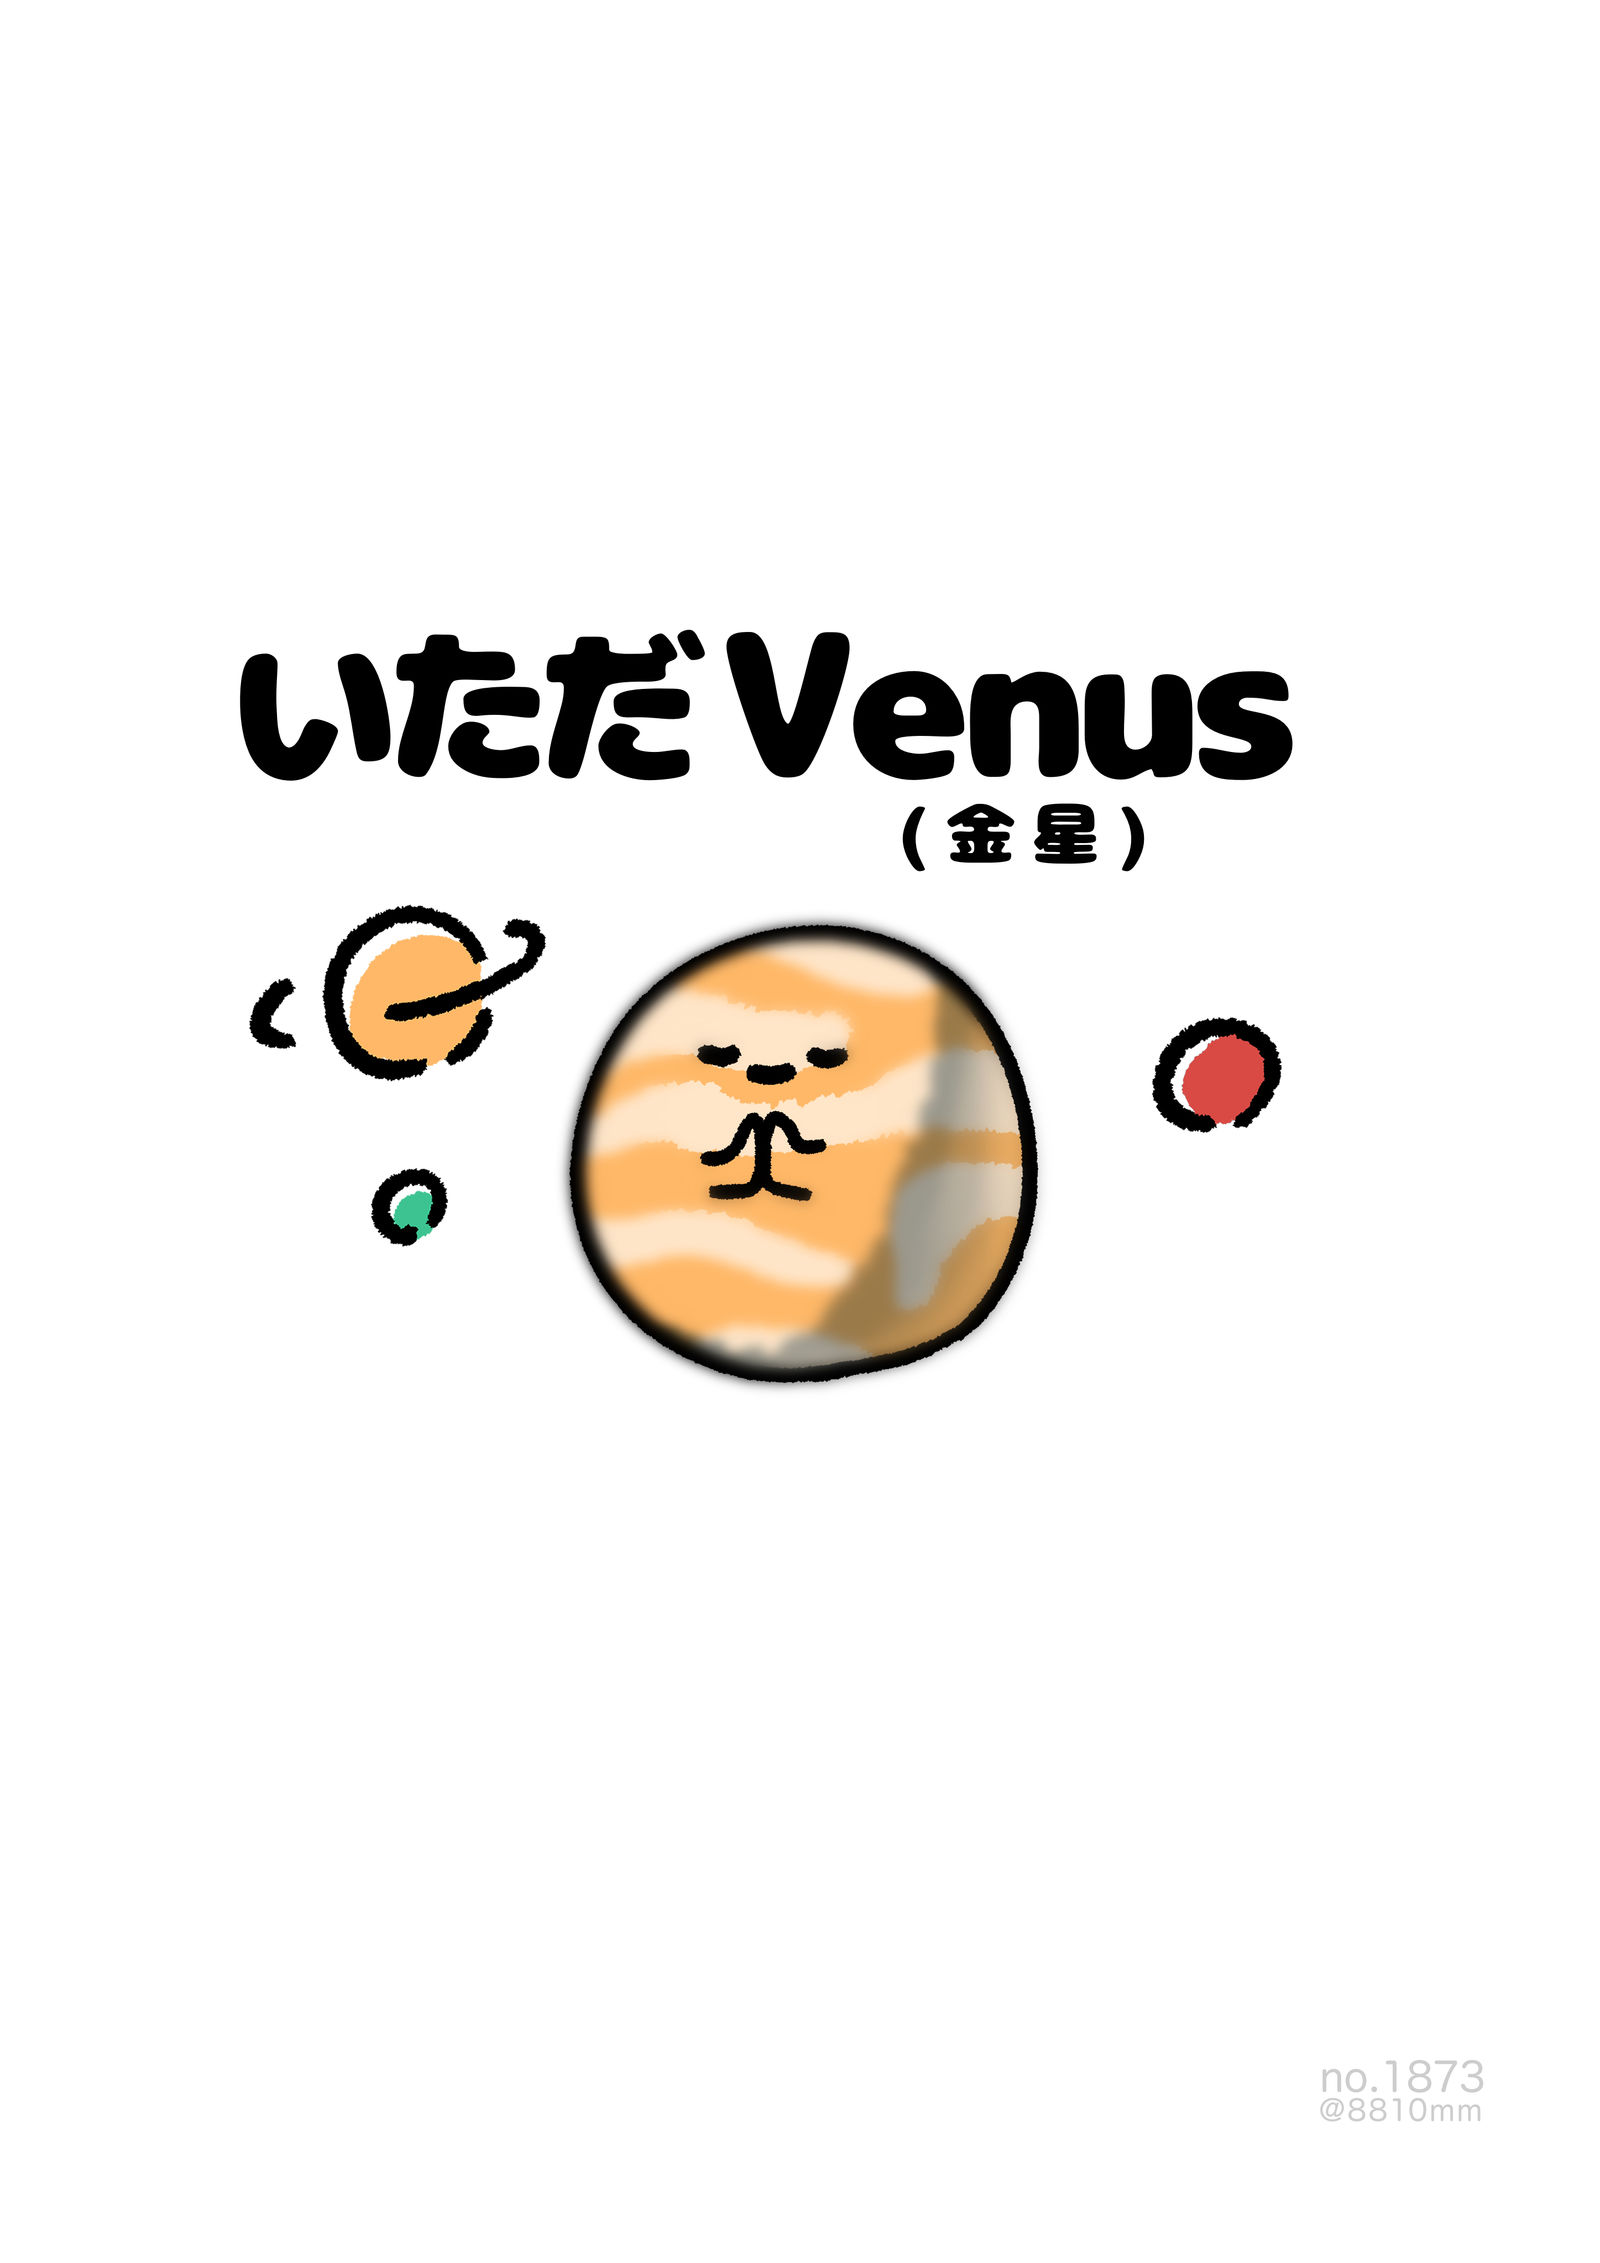 no.1873《来了Venus》插画图片壁纸